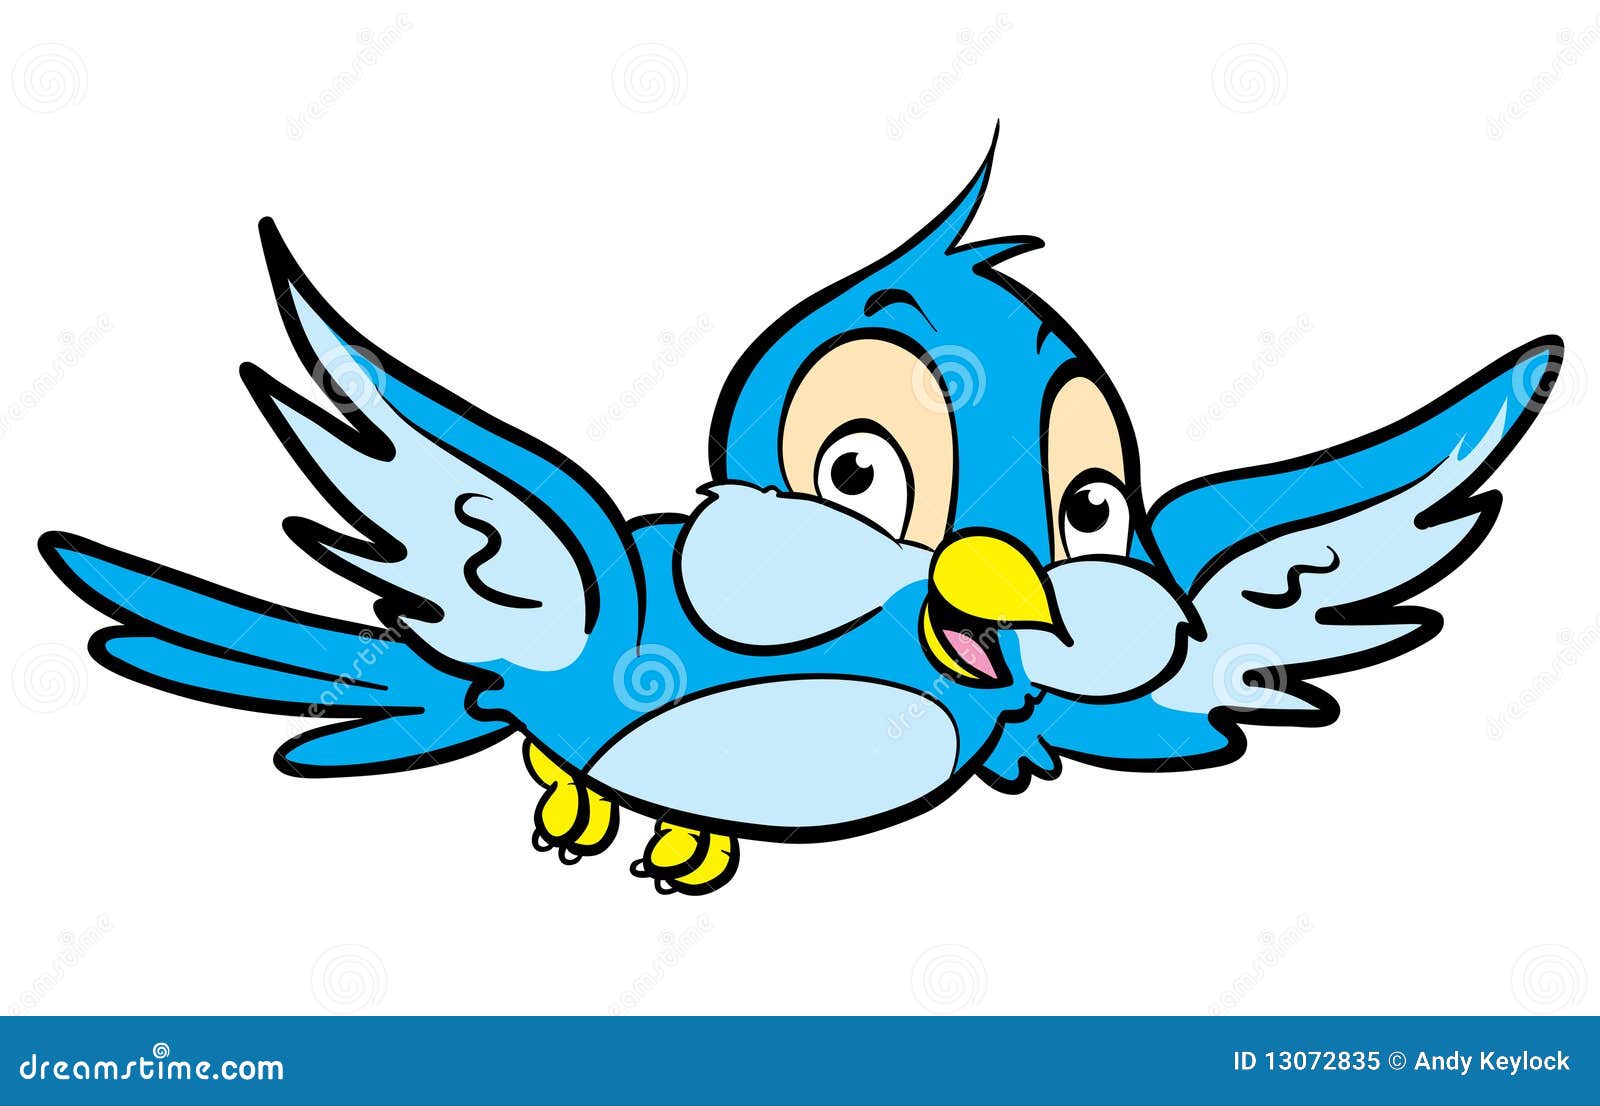 Illustration de dessin animé d un petit vol mignon d oiseau